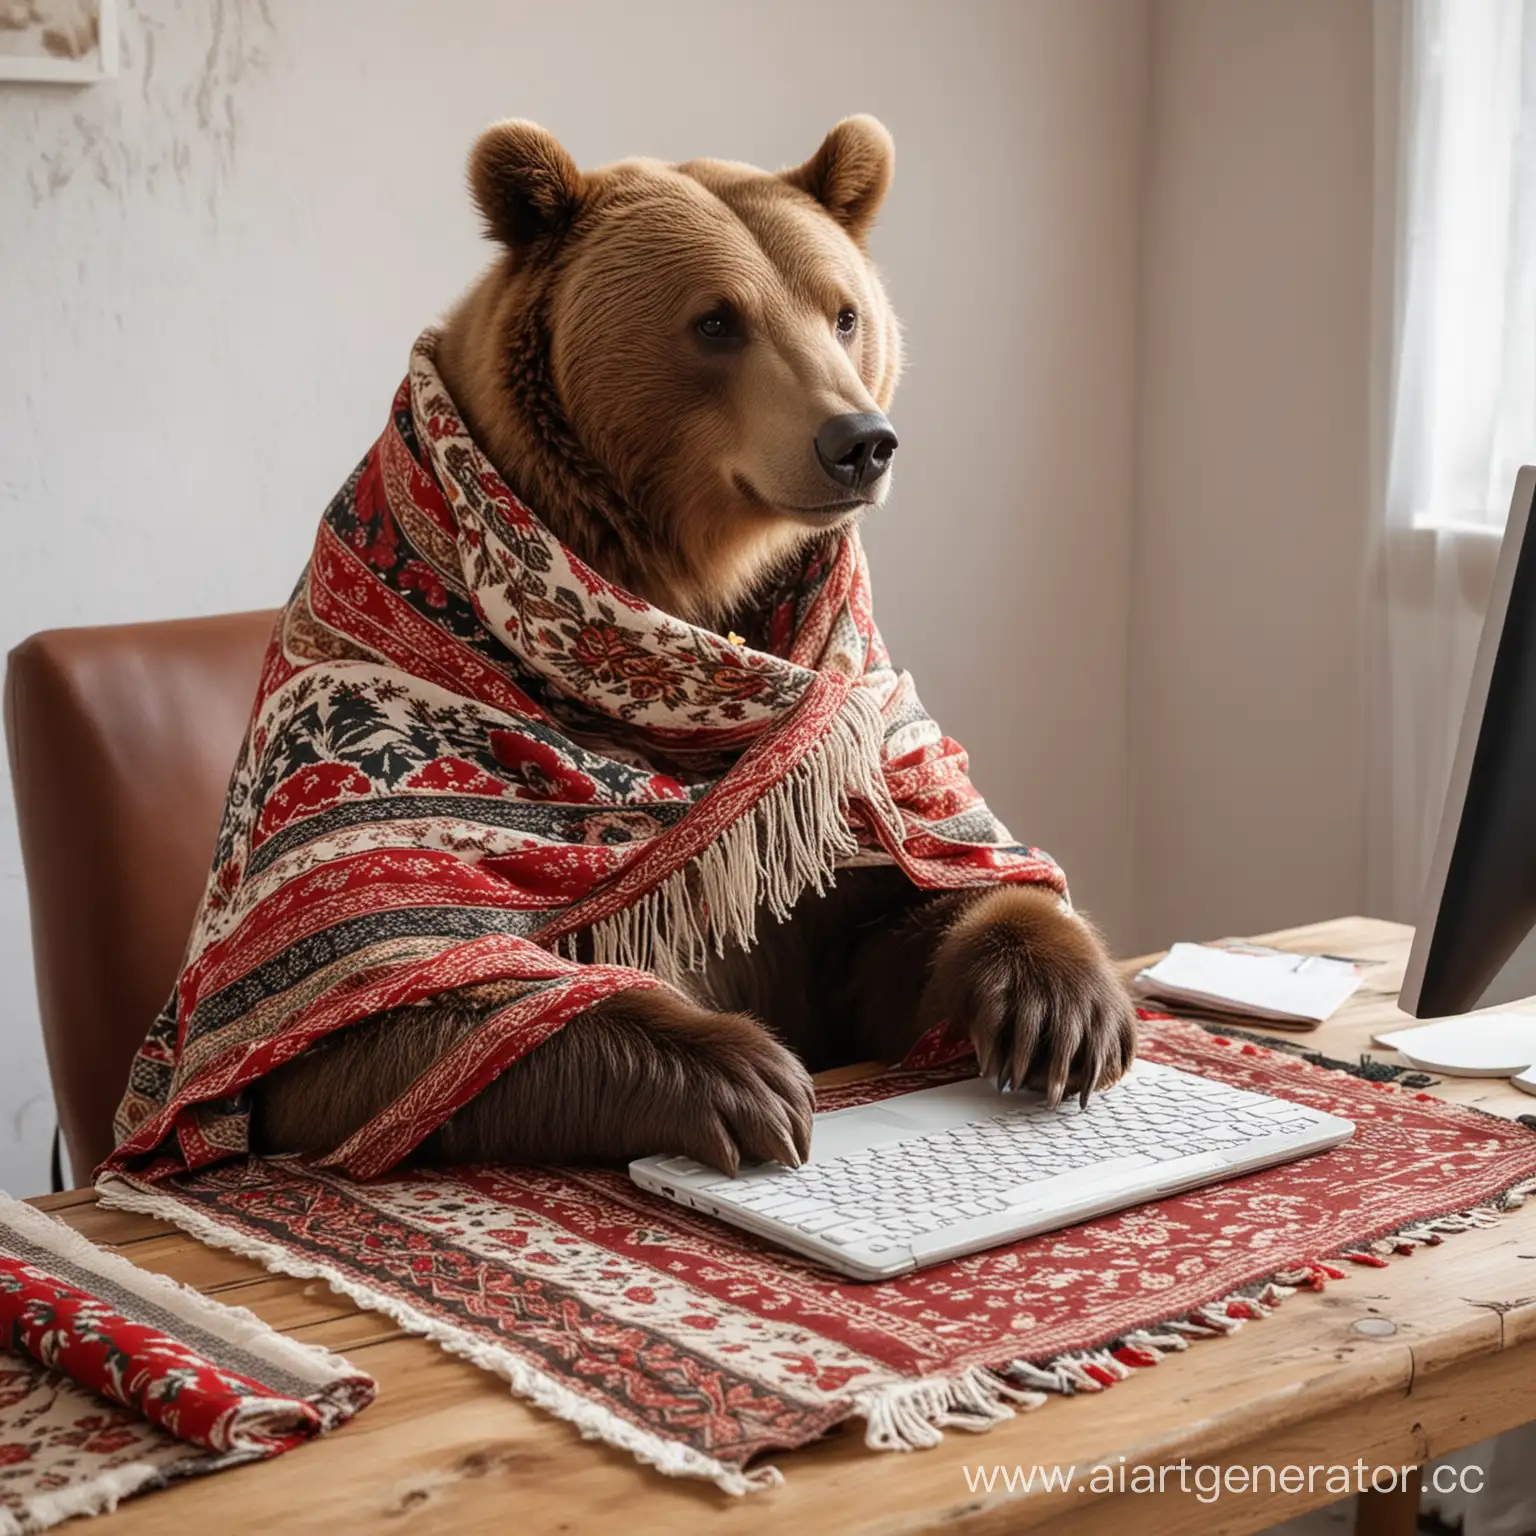 бурый медведь в русском платке с узорами сидит столом в компьютере и работает